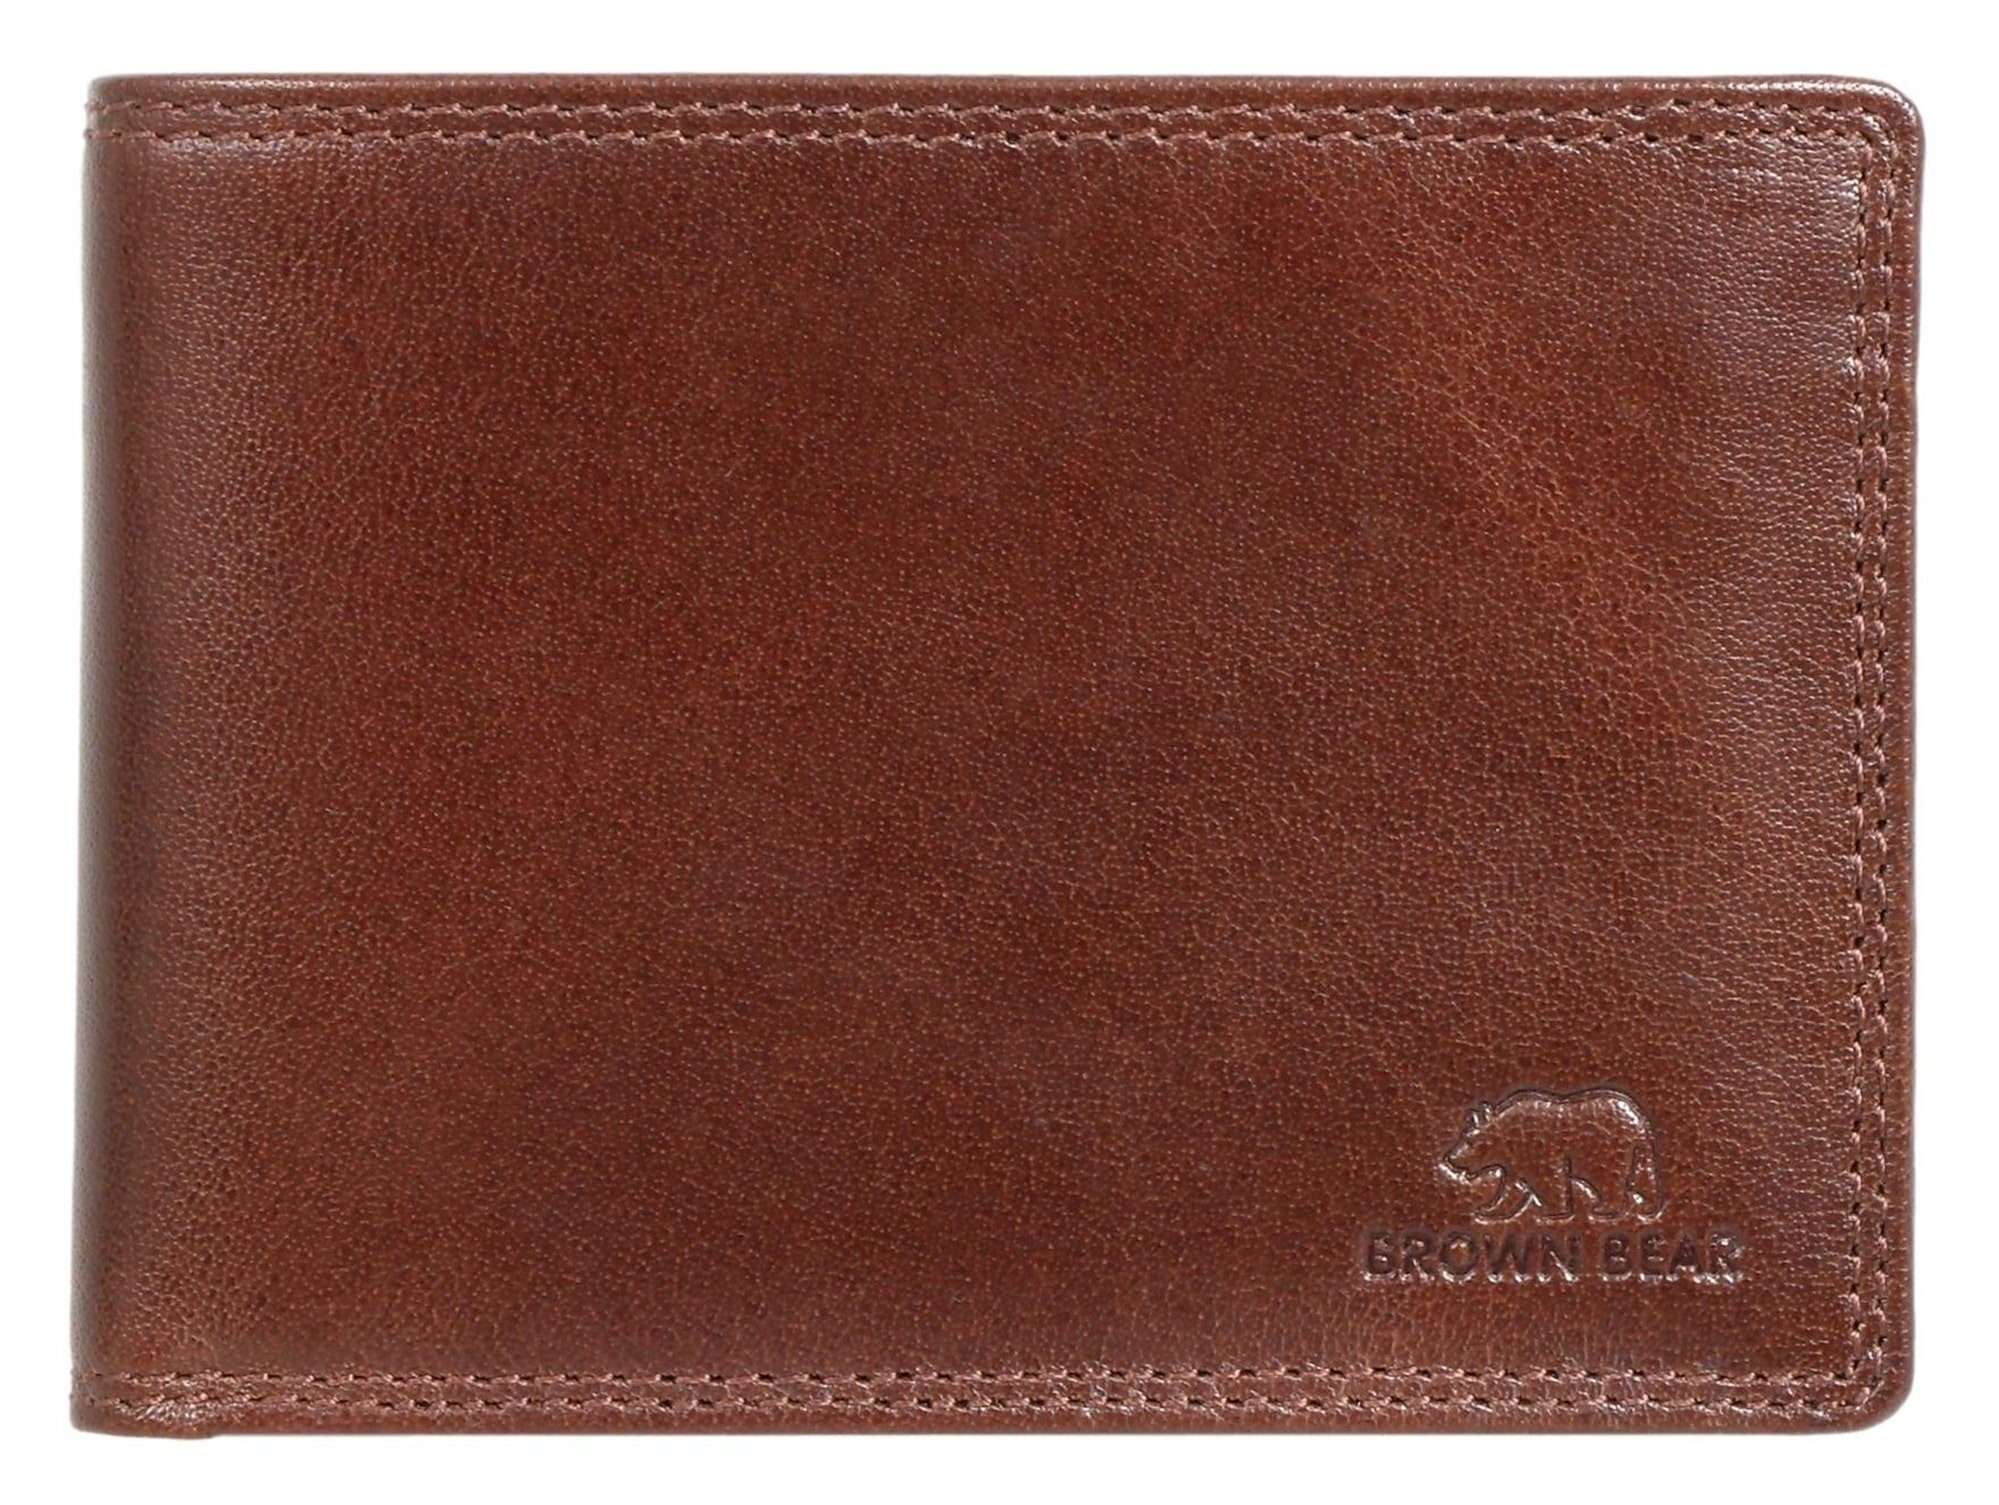 Brown Bear Geldbörse Modell 8005 Herren Portemonnaie mit Reißverschlussfach, aus Echtleder mit 9 Kartenfächern Farbe Braun Braun Toscana